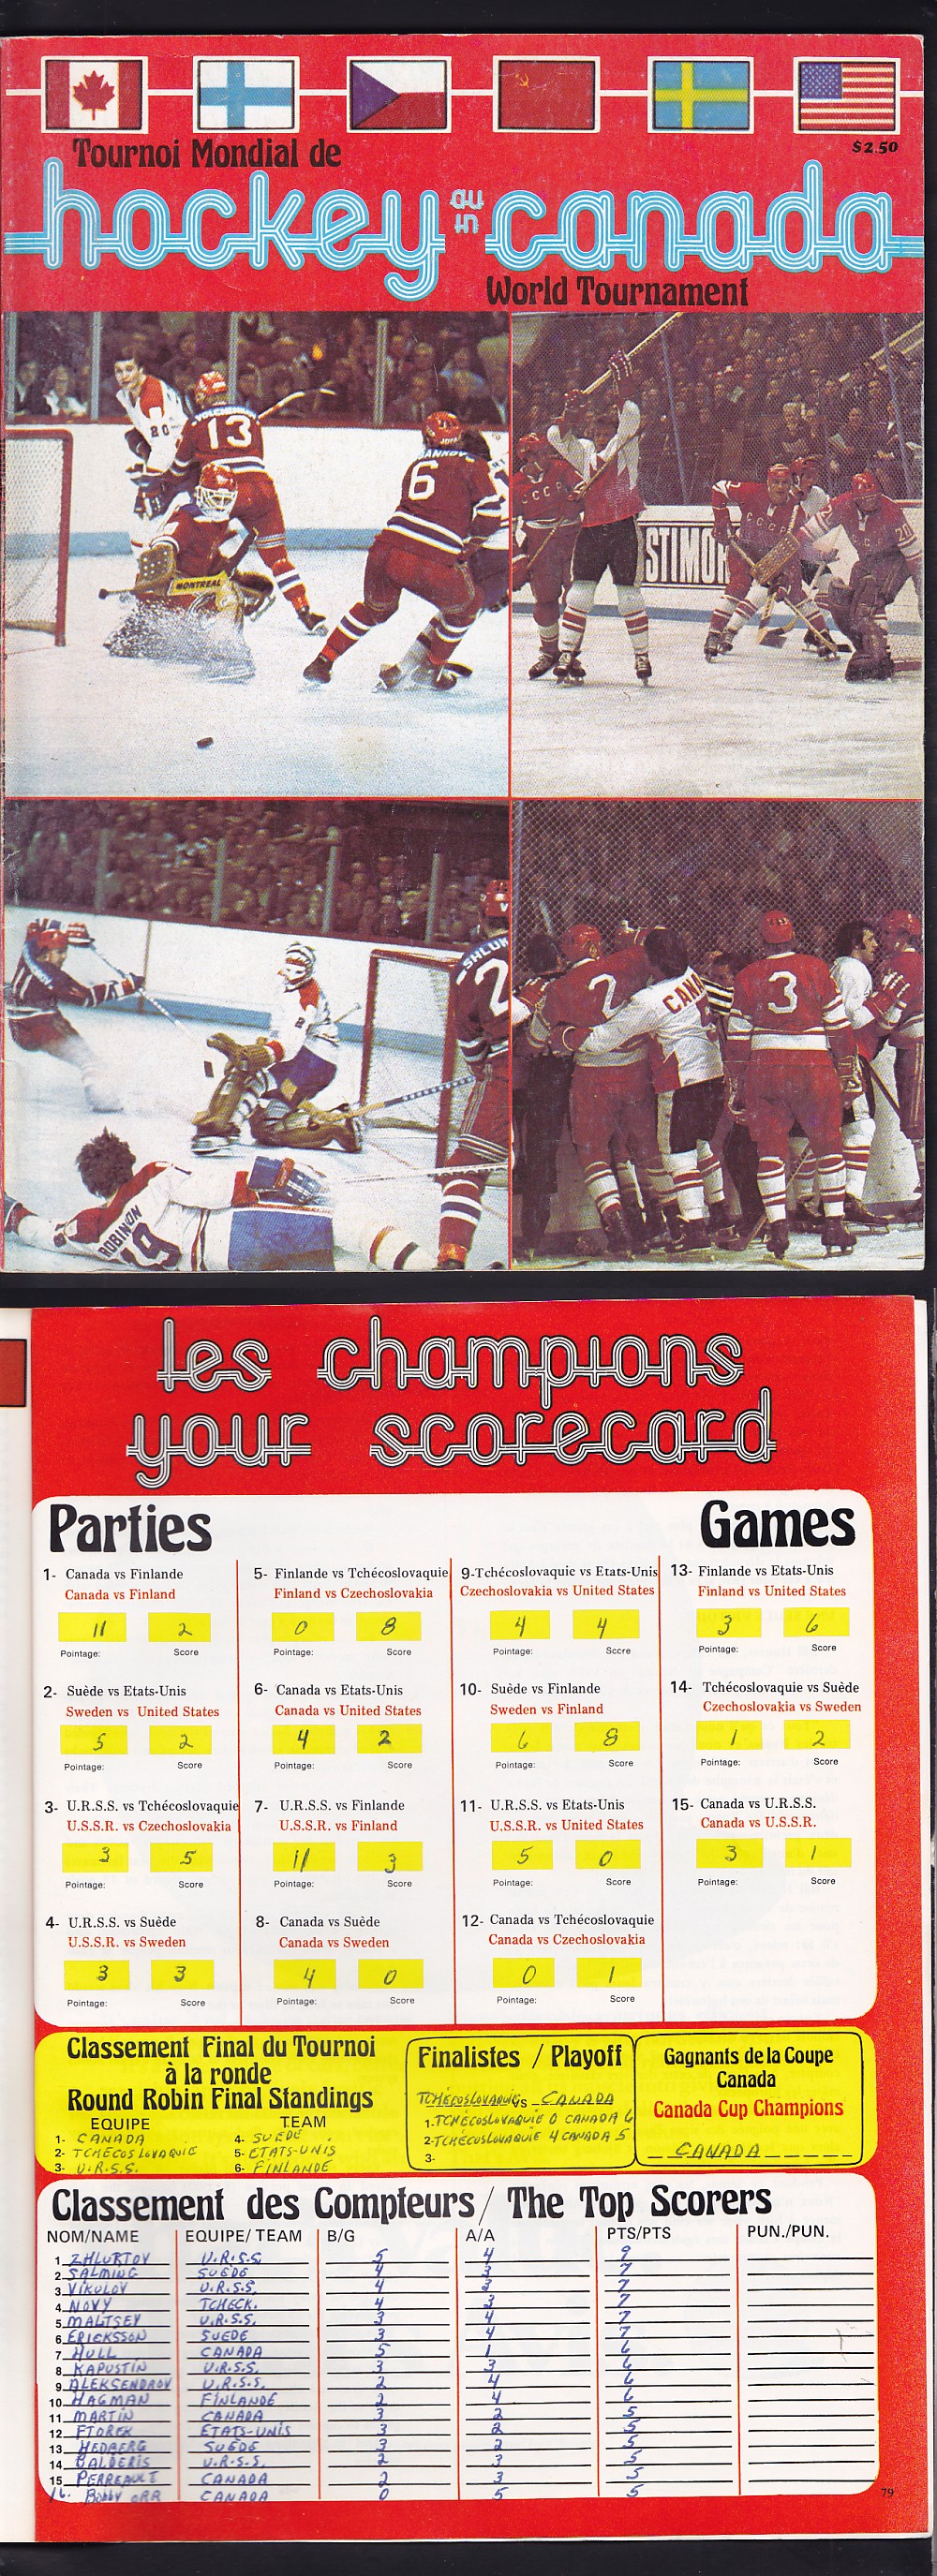 1976 HOCKEY WORLD CHAMPIONSHIP PROGRAM photo